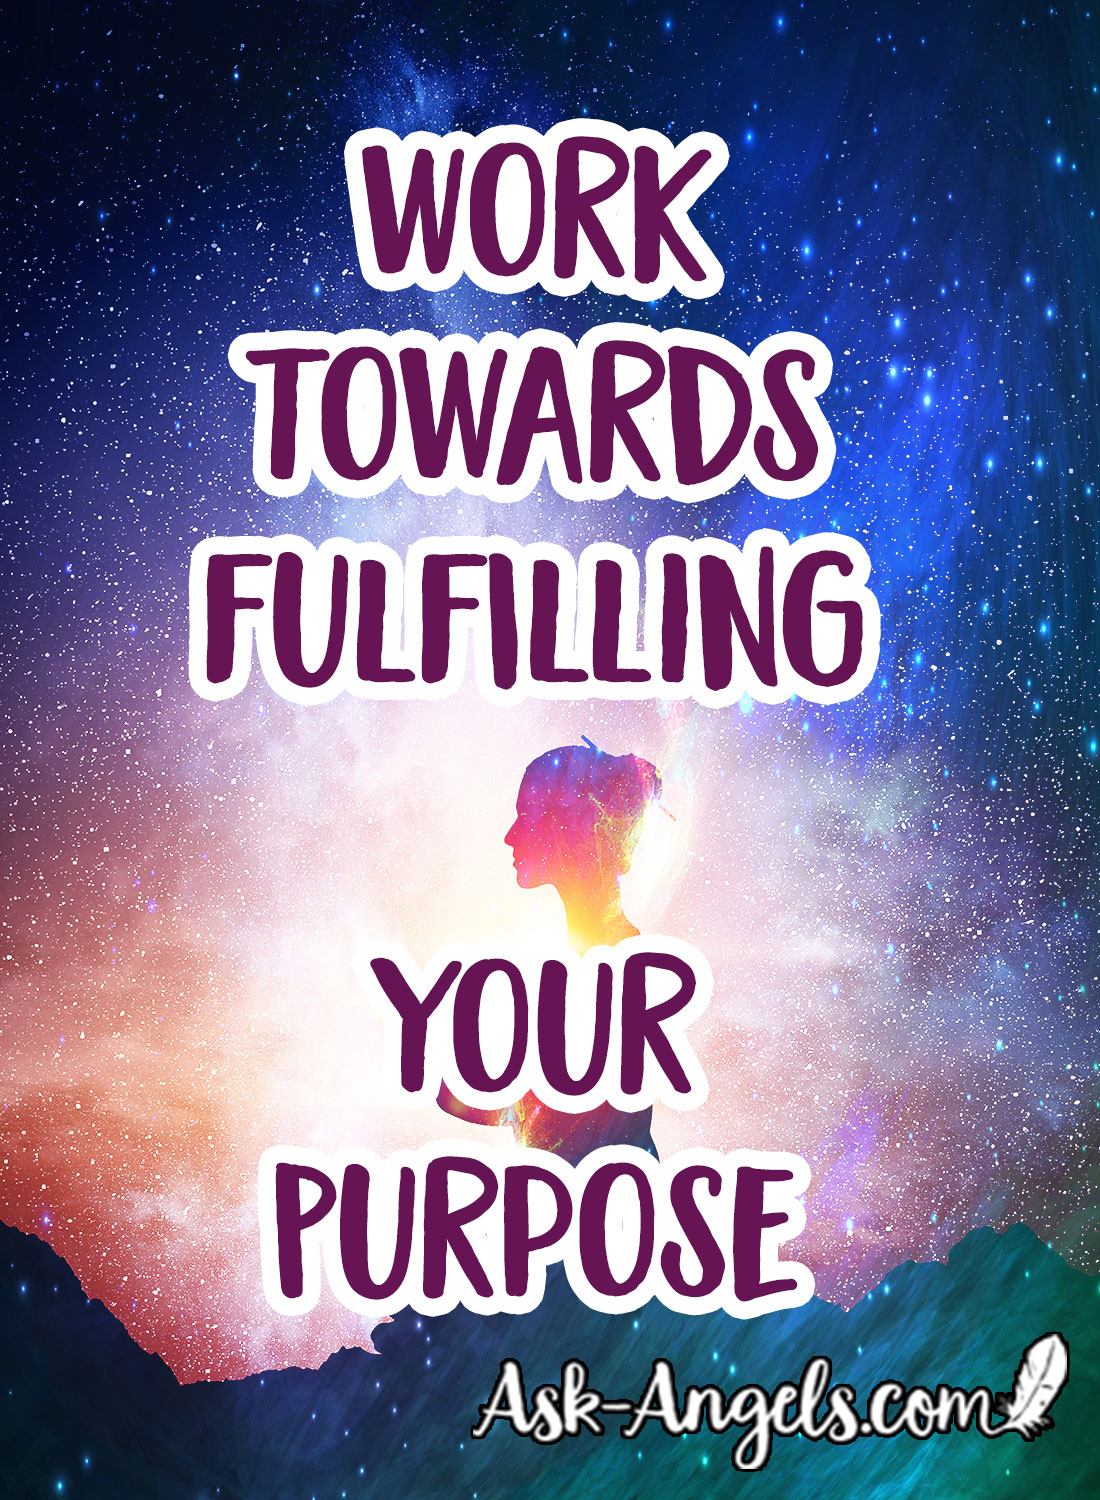 arbeite auf die Erfüllung deines Zwecks hin